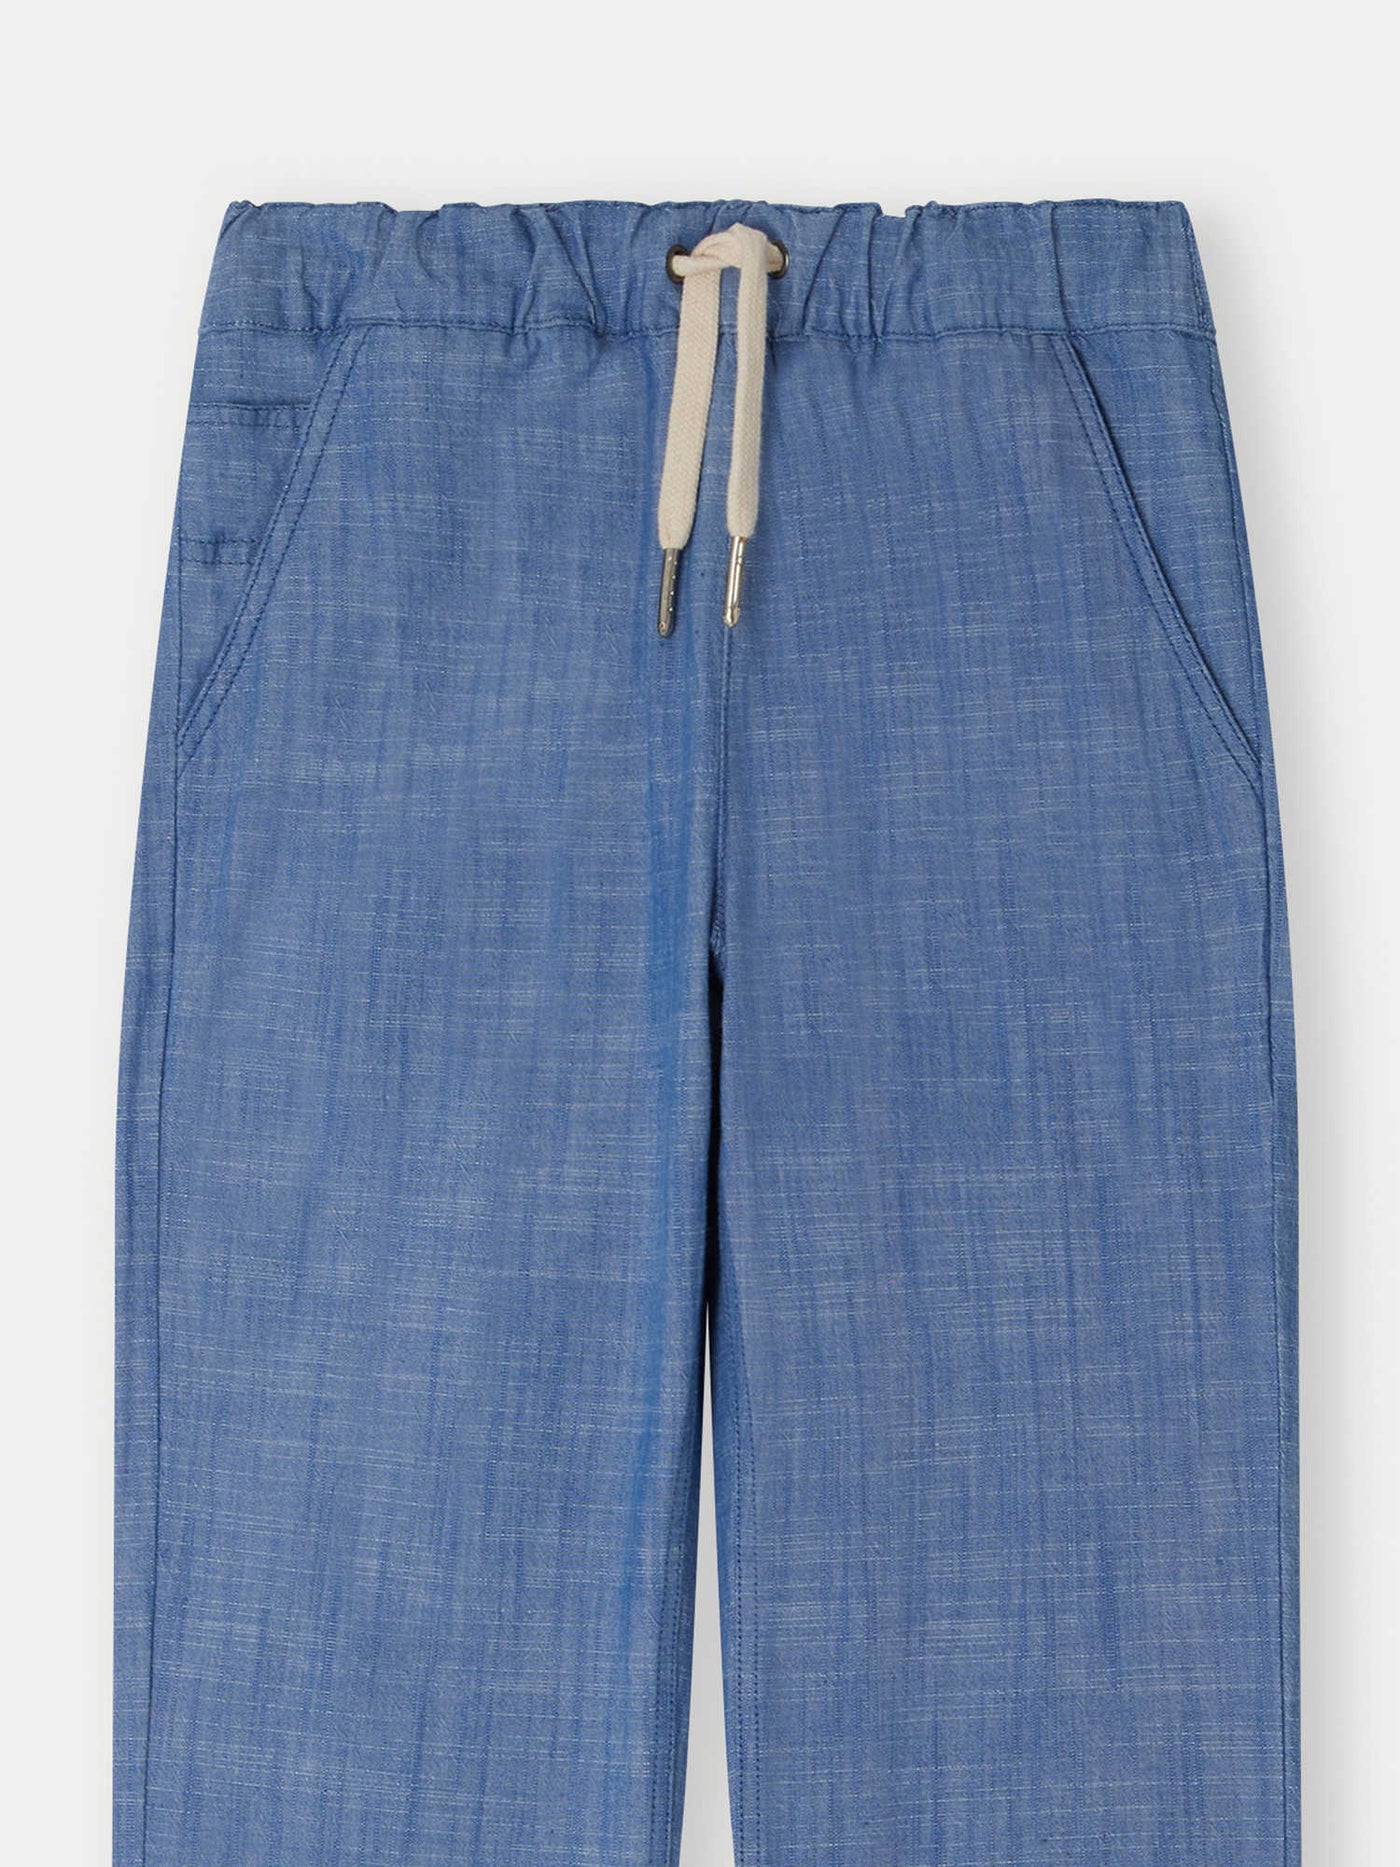 Pantalon Connell bleu